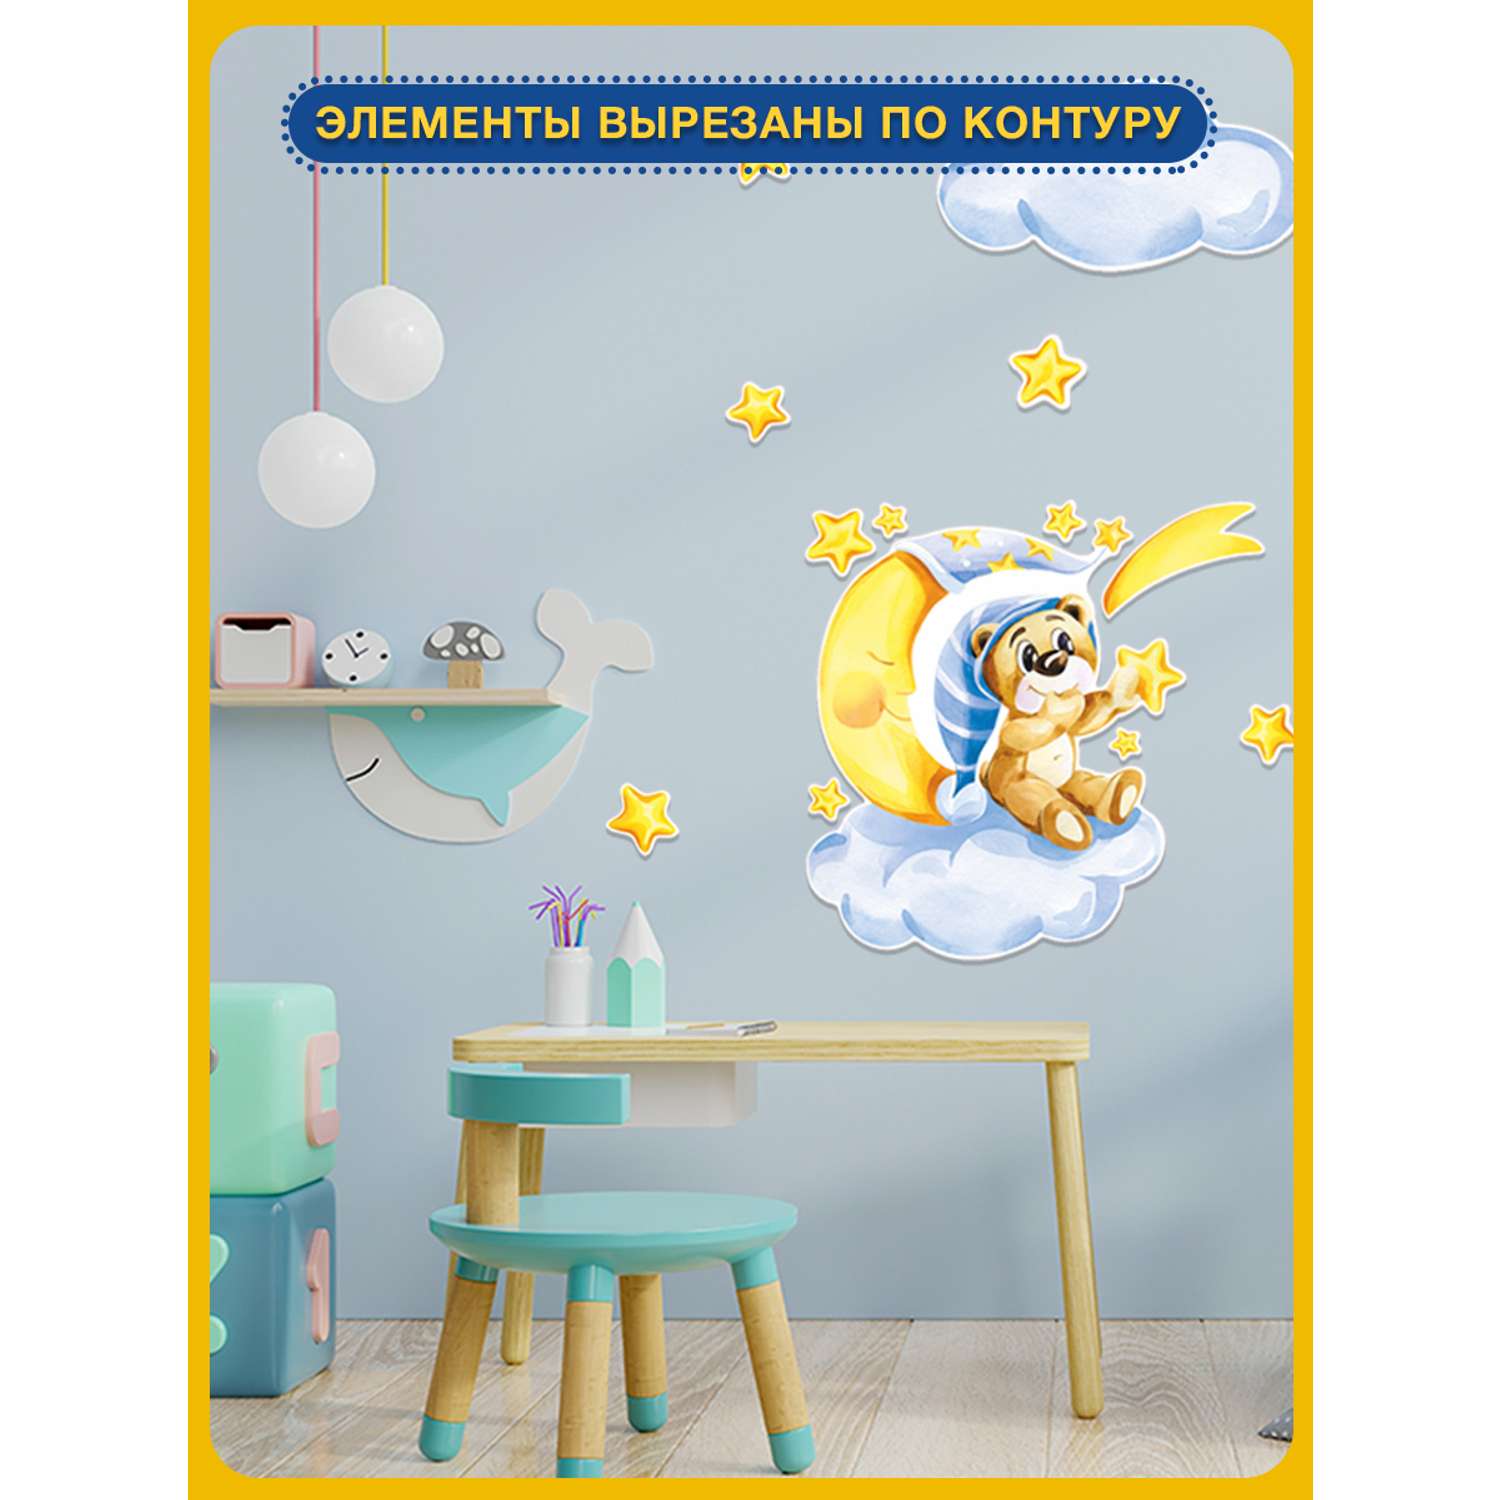 Наклейка оформительская ГК Горчаков в детскую комнату сыну с рисунком мишка для декора - фото 4